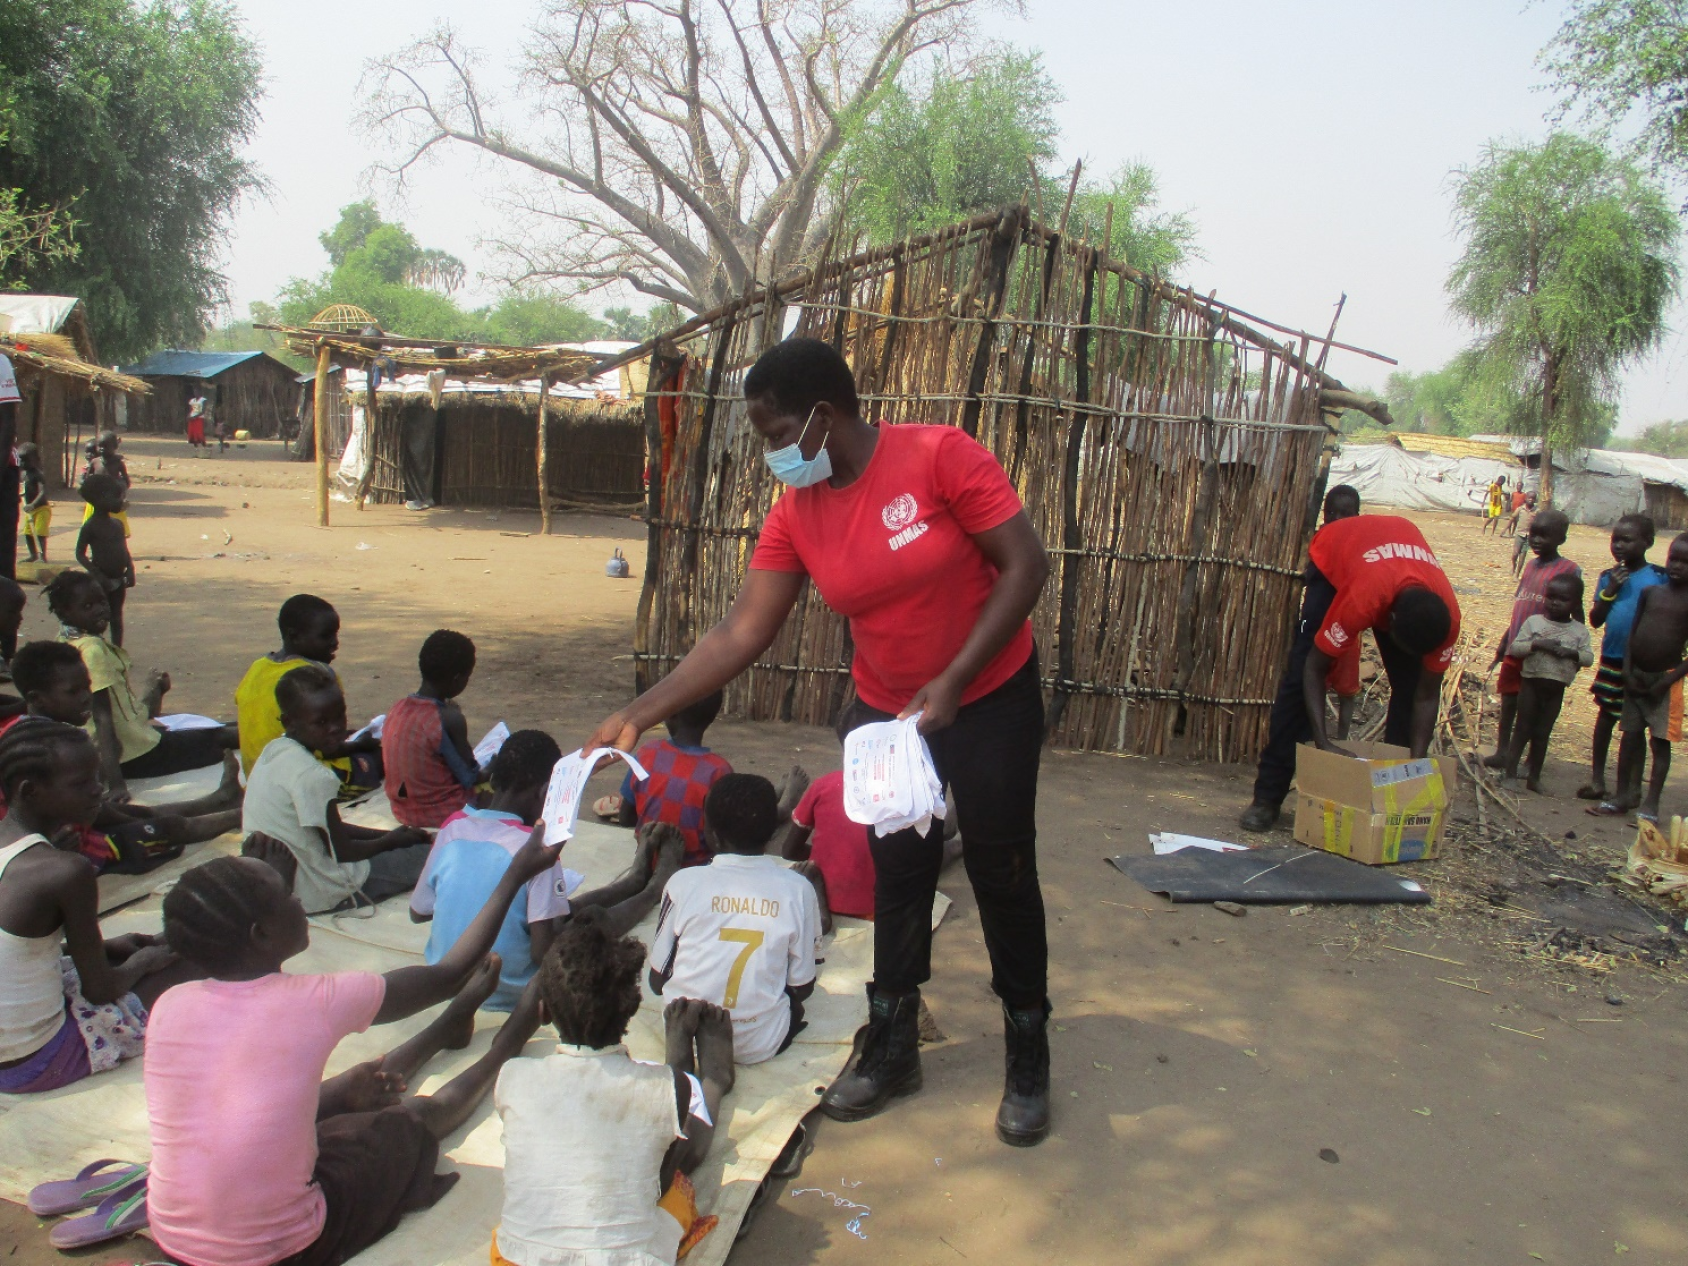 Женщина в красной рубашке и светло-голубой маске раздает информационные брошюры группе детей, сидящих на земле. 